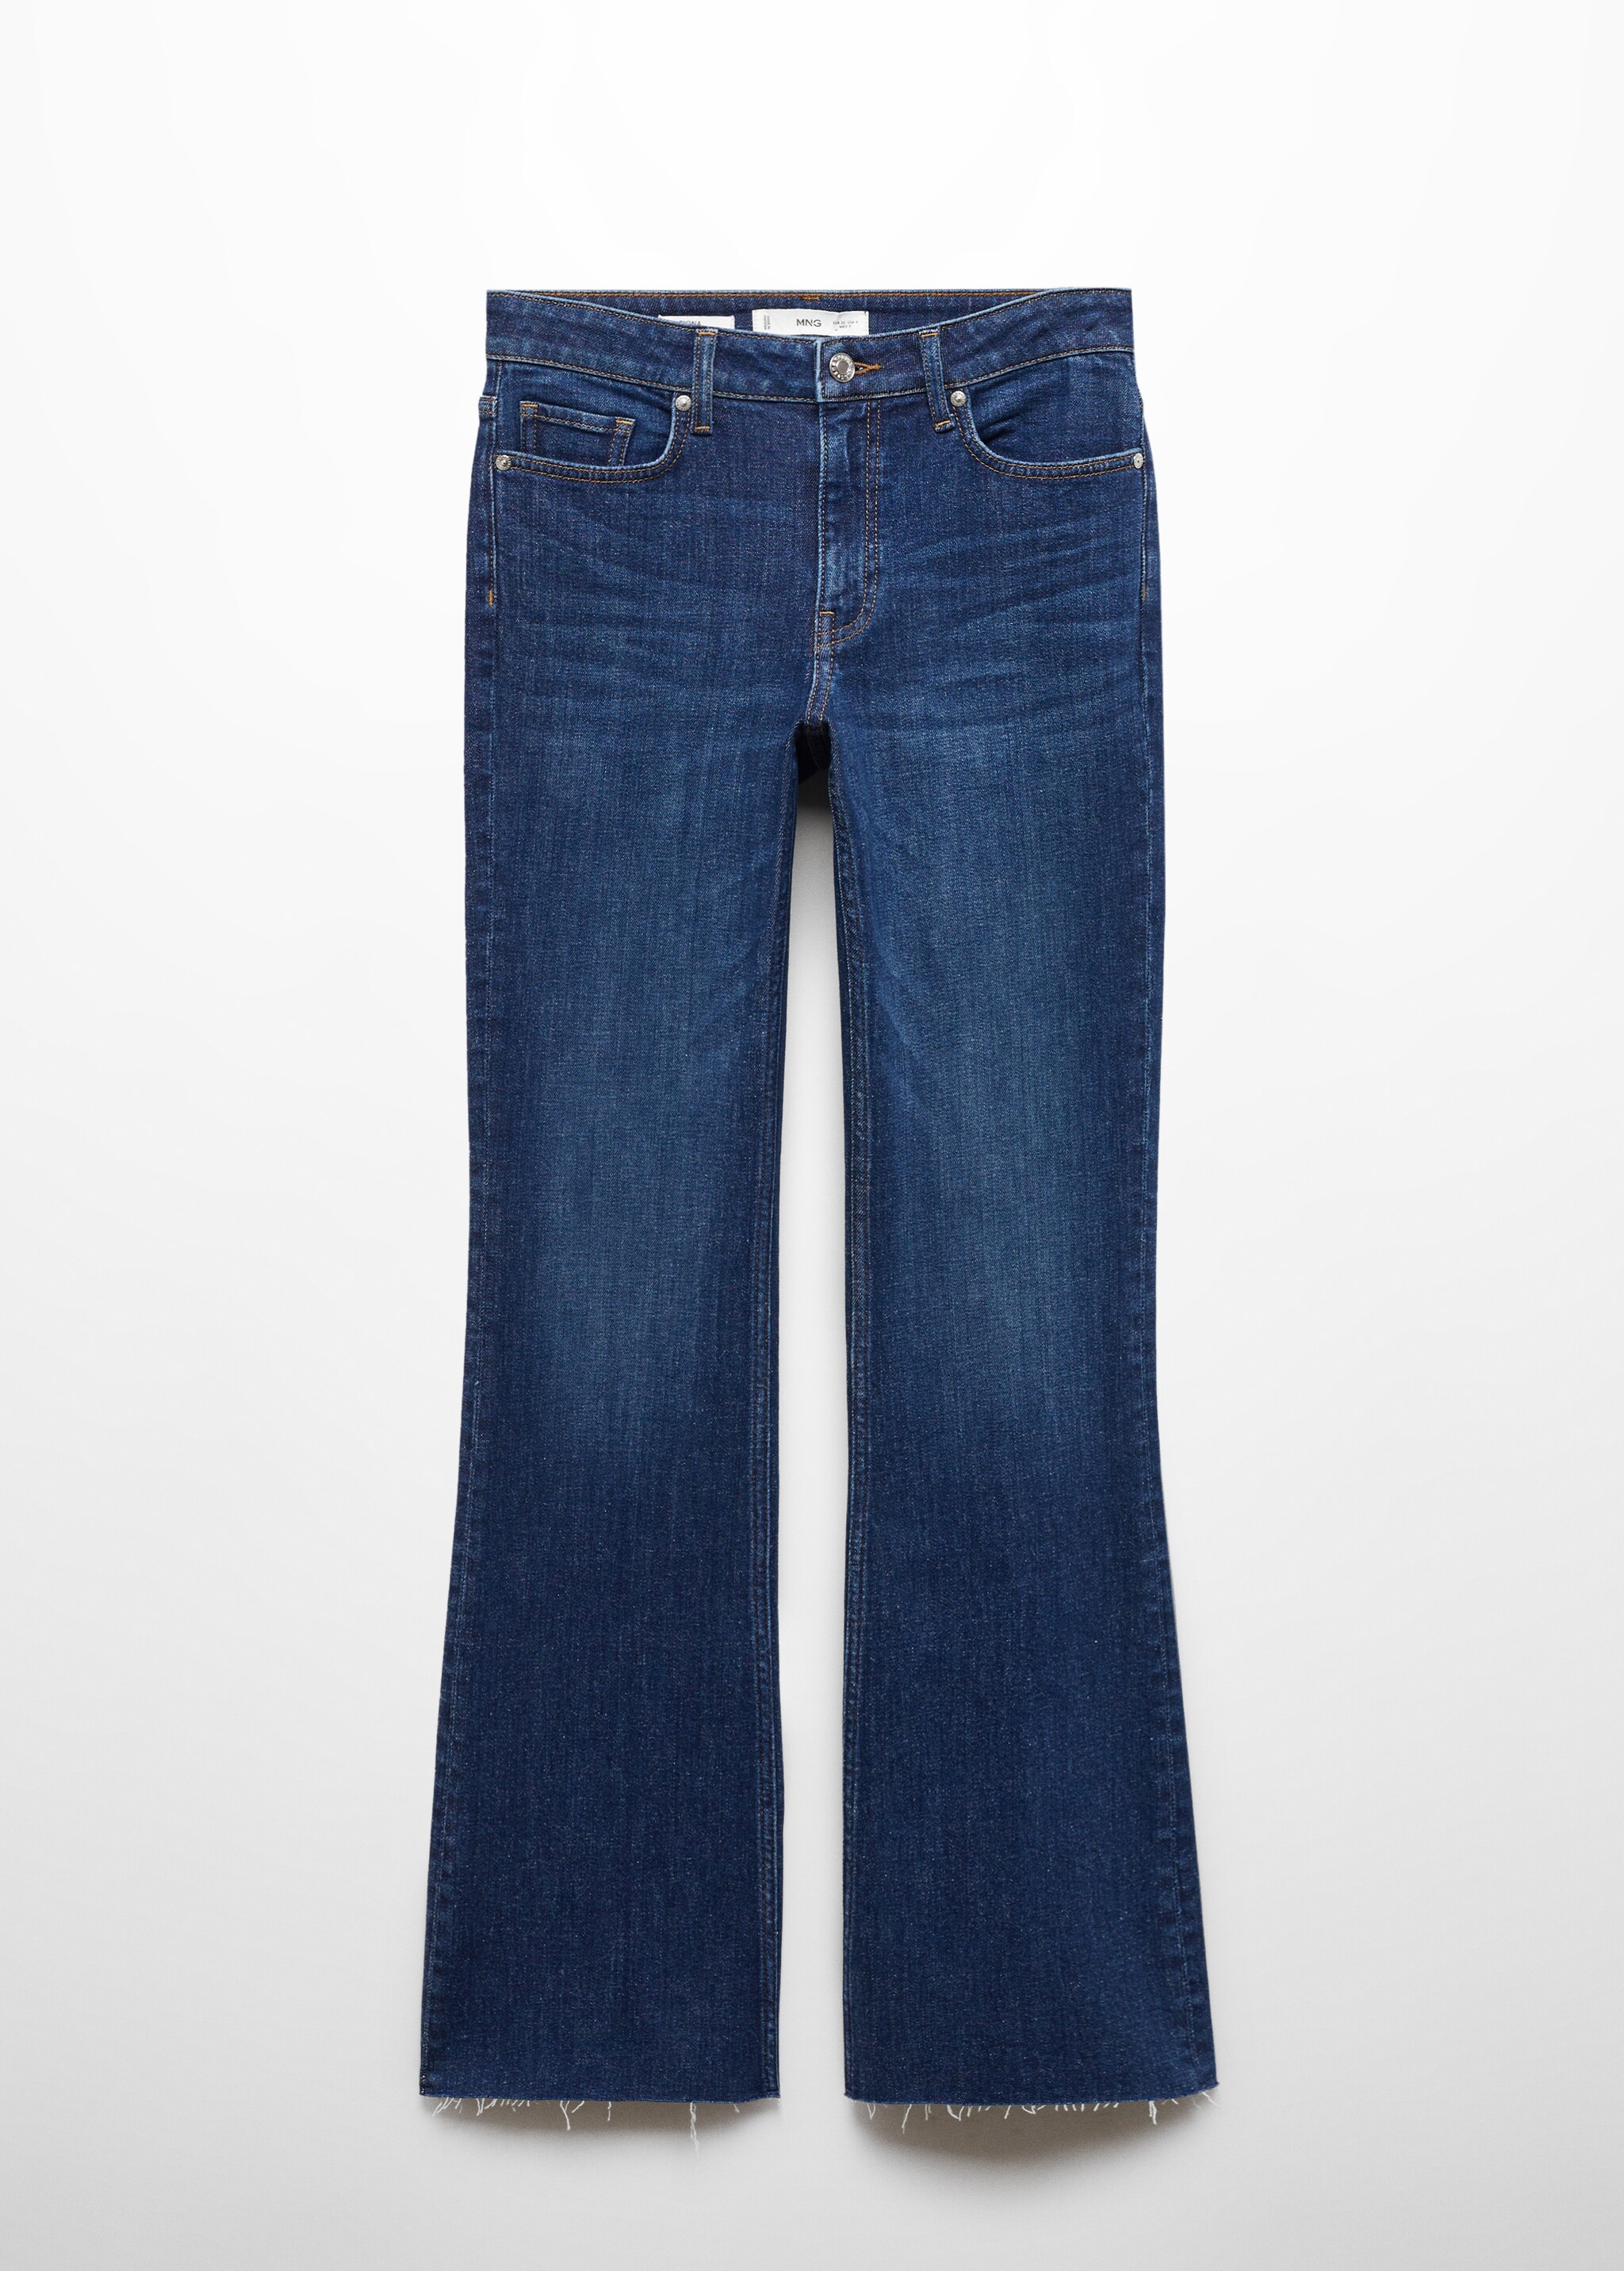 Jeans flare com cintura de altura média - Artigo sem modelo